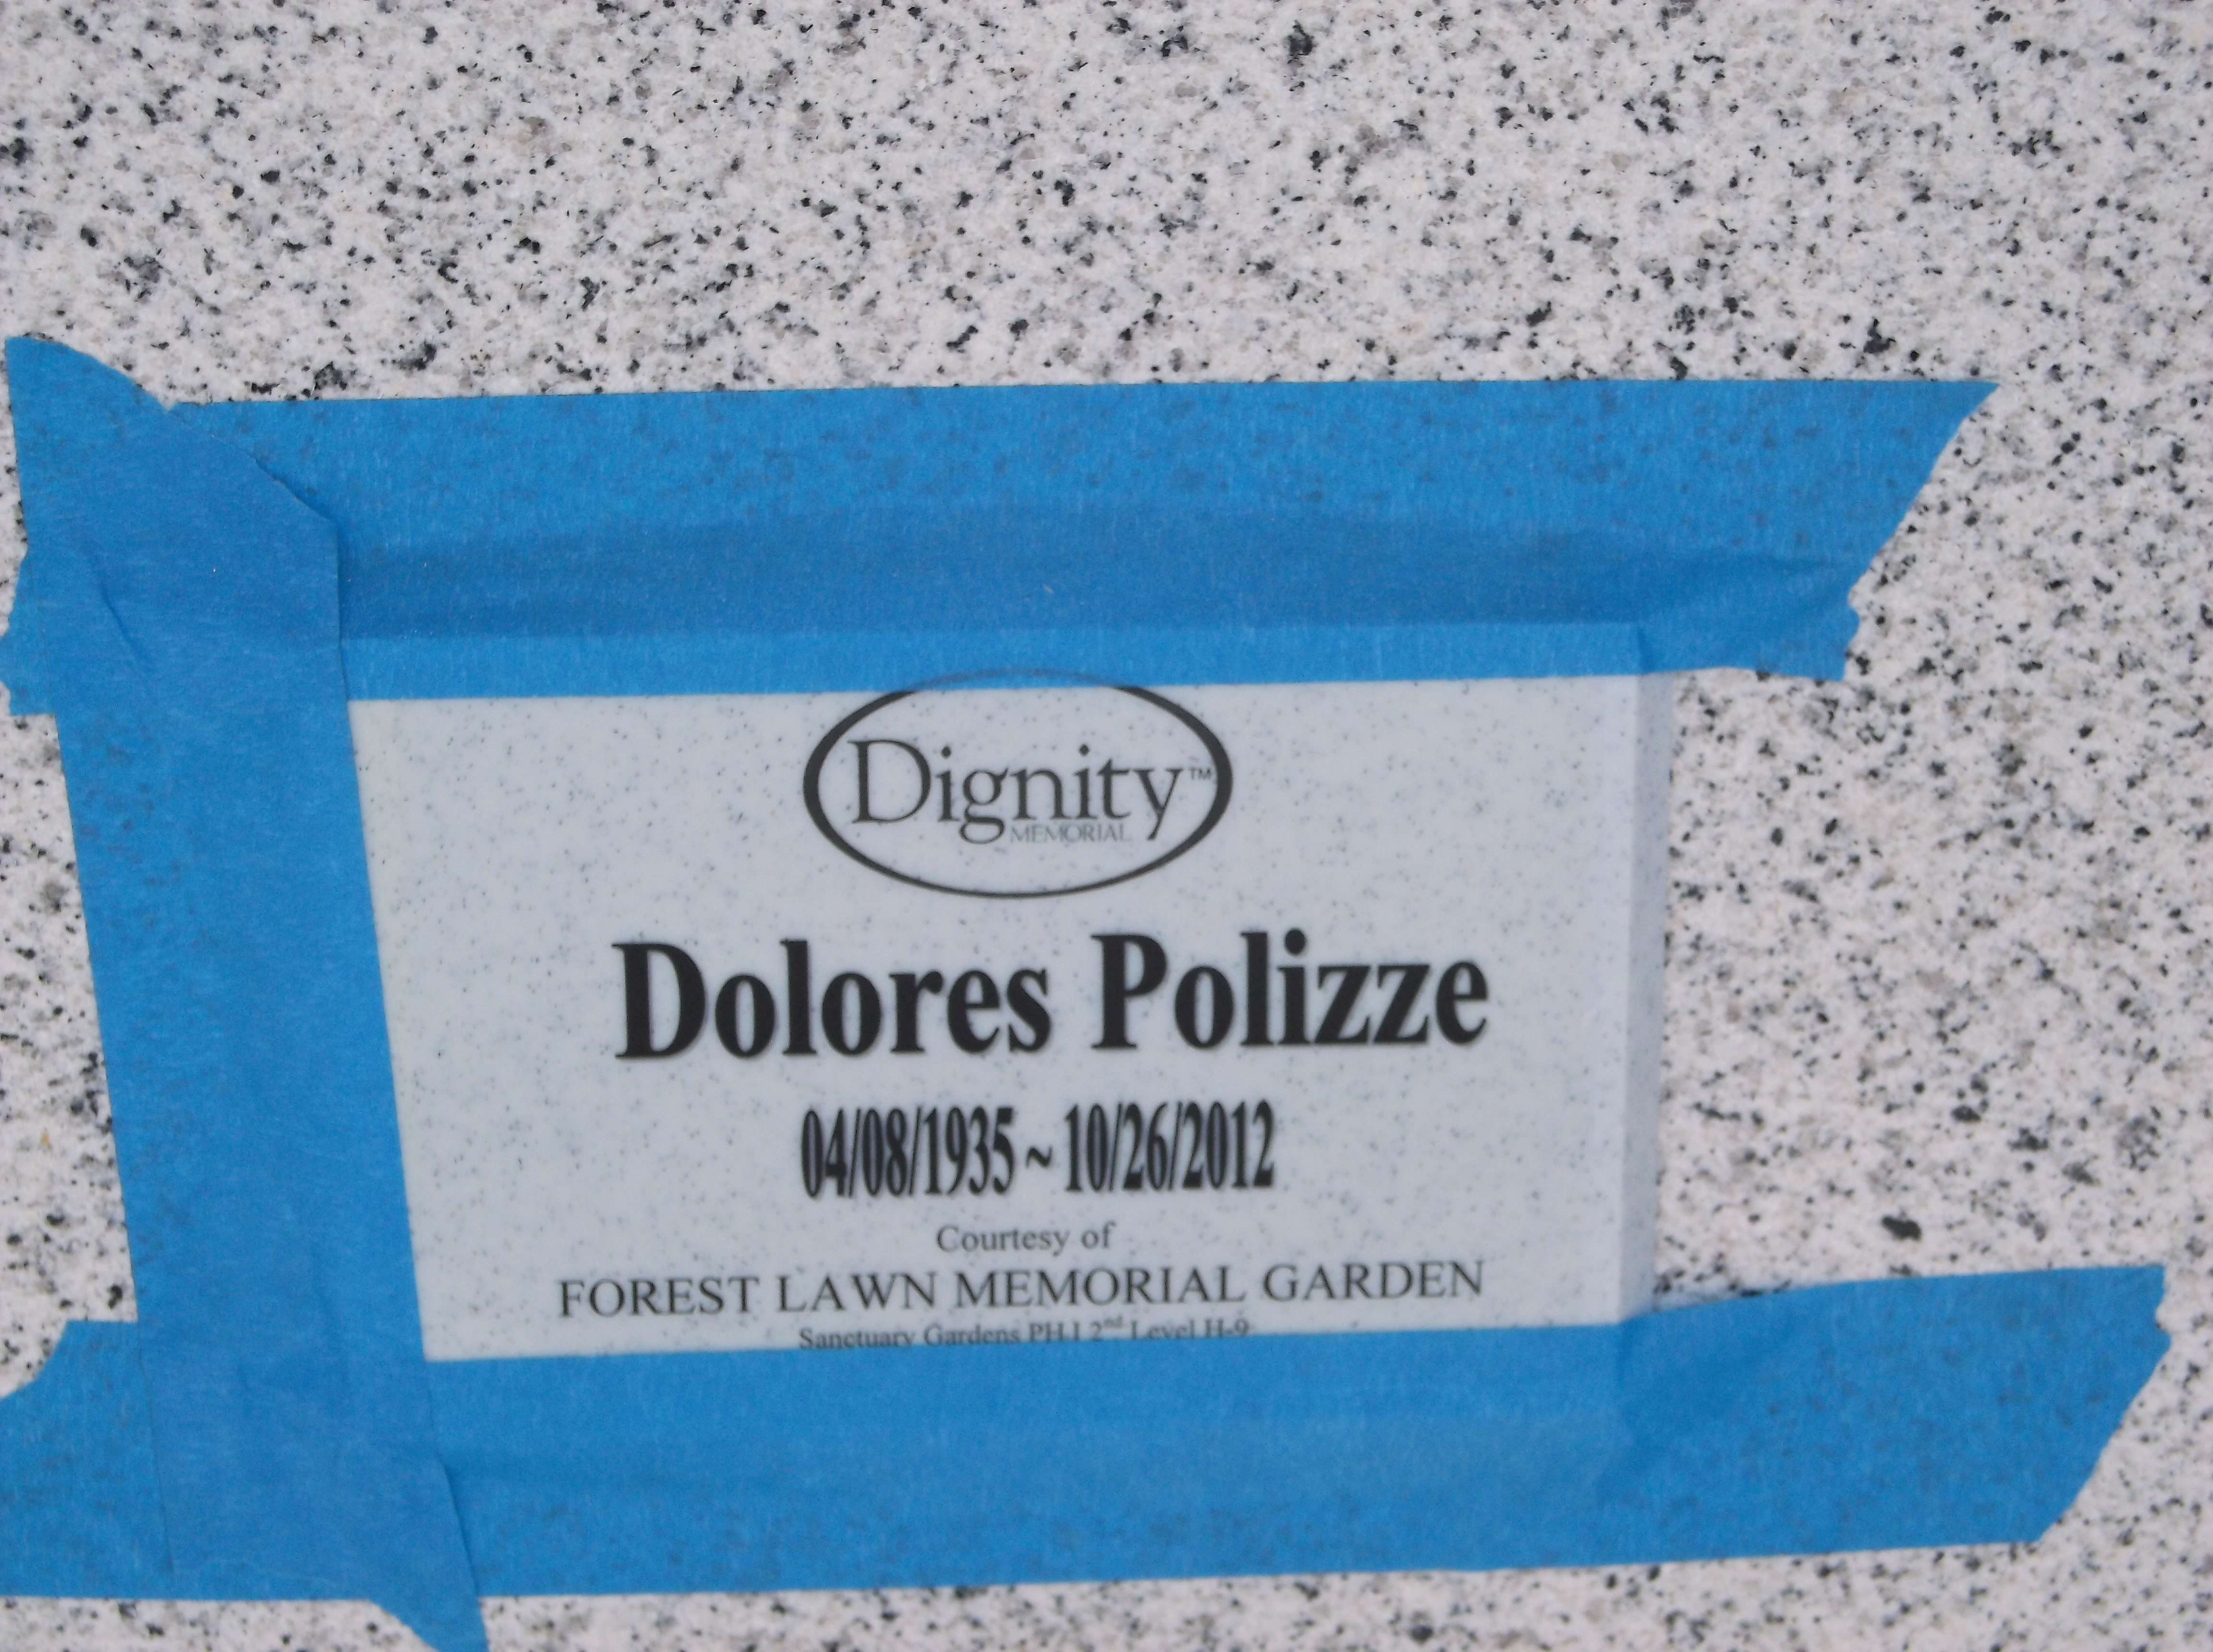 Dolores Polizze